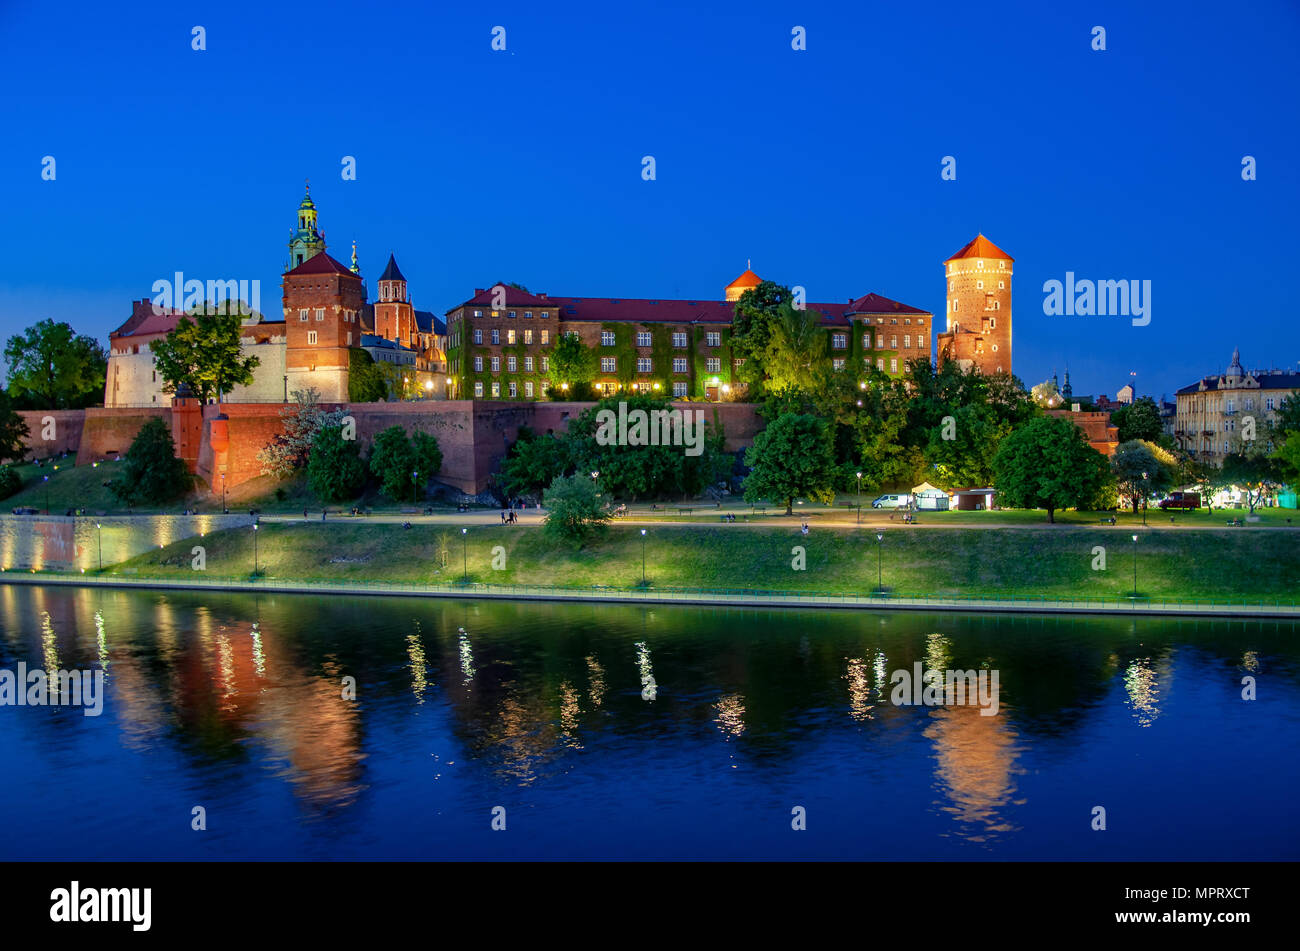 Polen, Krakau. Beleuchtete königliche Schloss Wawel und Dom bei Nacht und ihre Reflexion in der Weichsel. Riverside mit Park, Bäume, Promenade und l Stockfoto